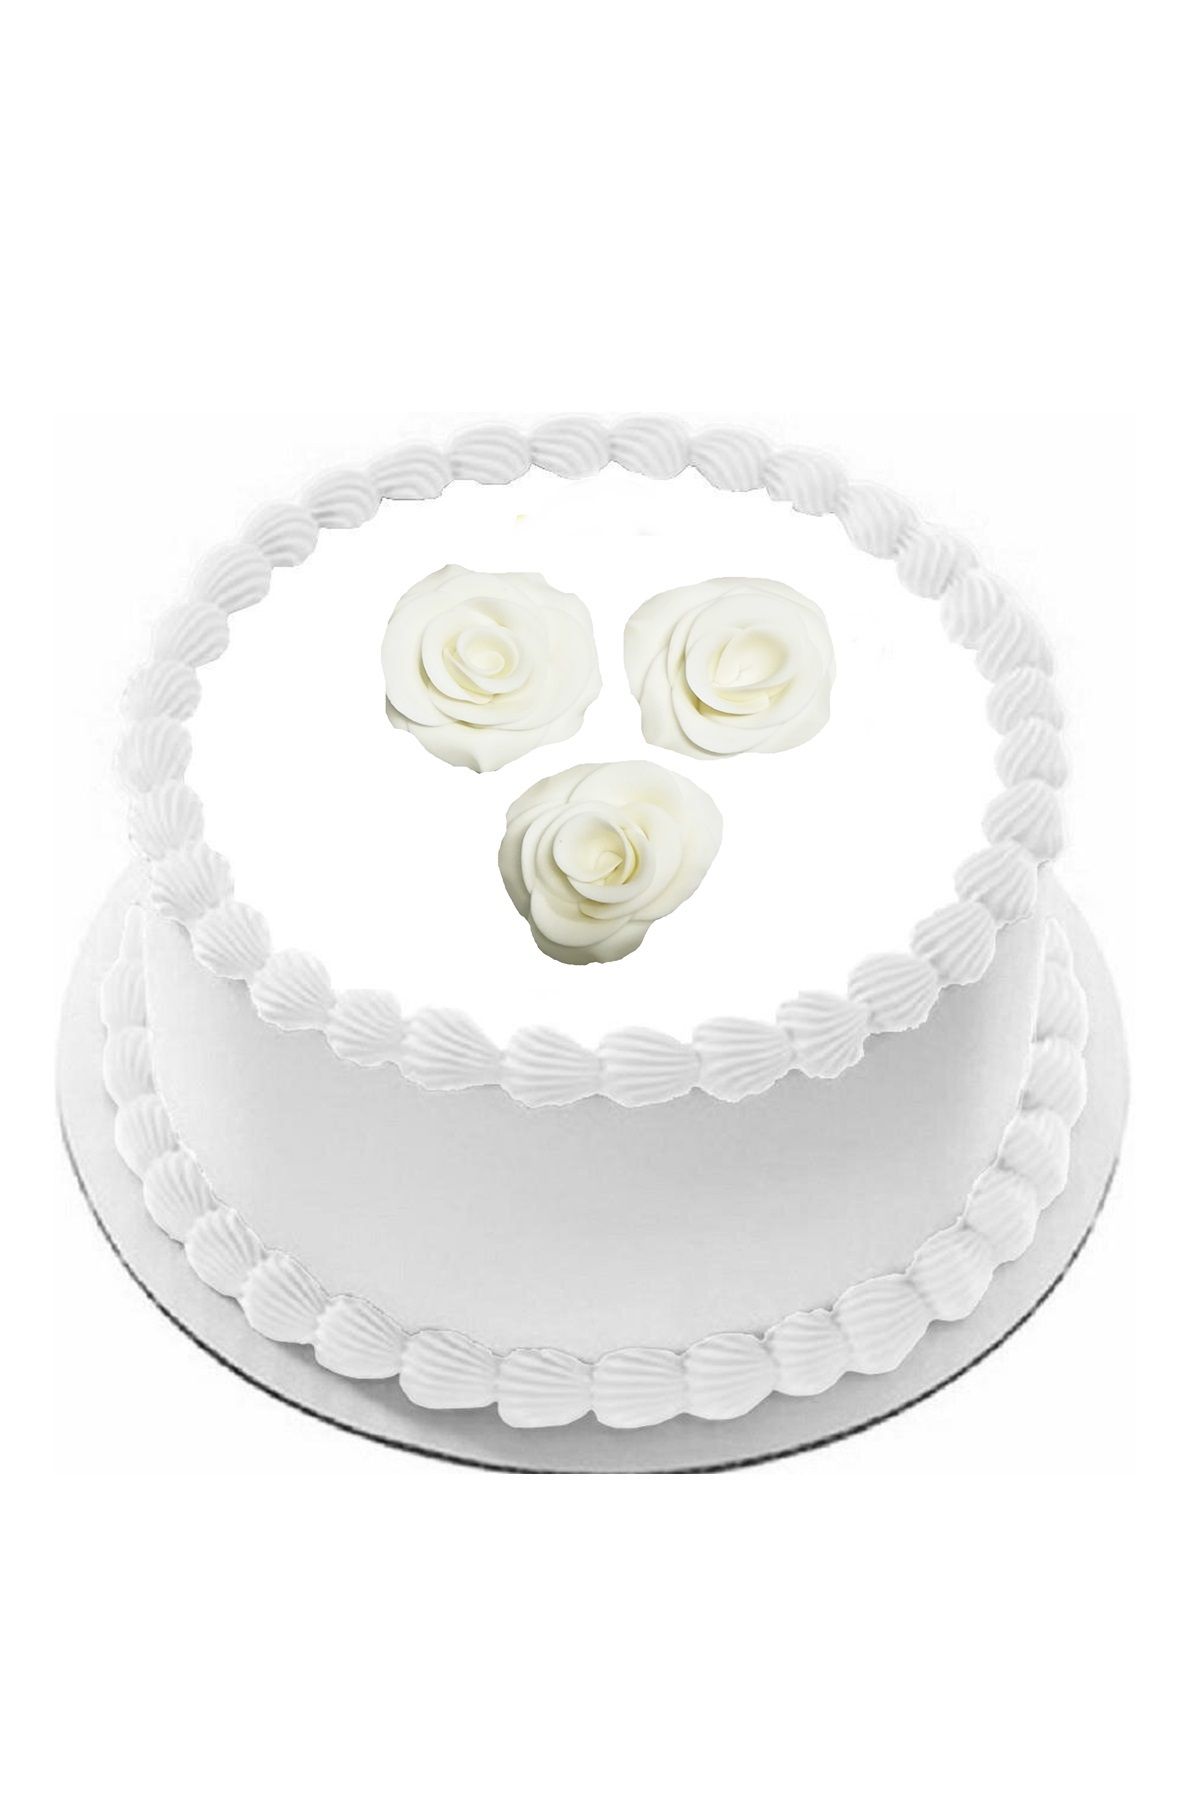 ovalette Yenilebilir Pasta Süslemesi Beyaz Şeker Hamurundan Gül 3 Adet Gelecek 4-5 cm Ebatında